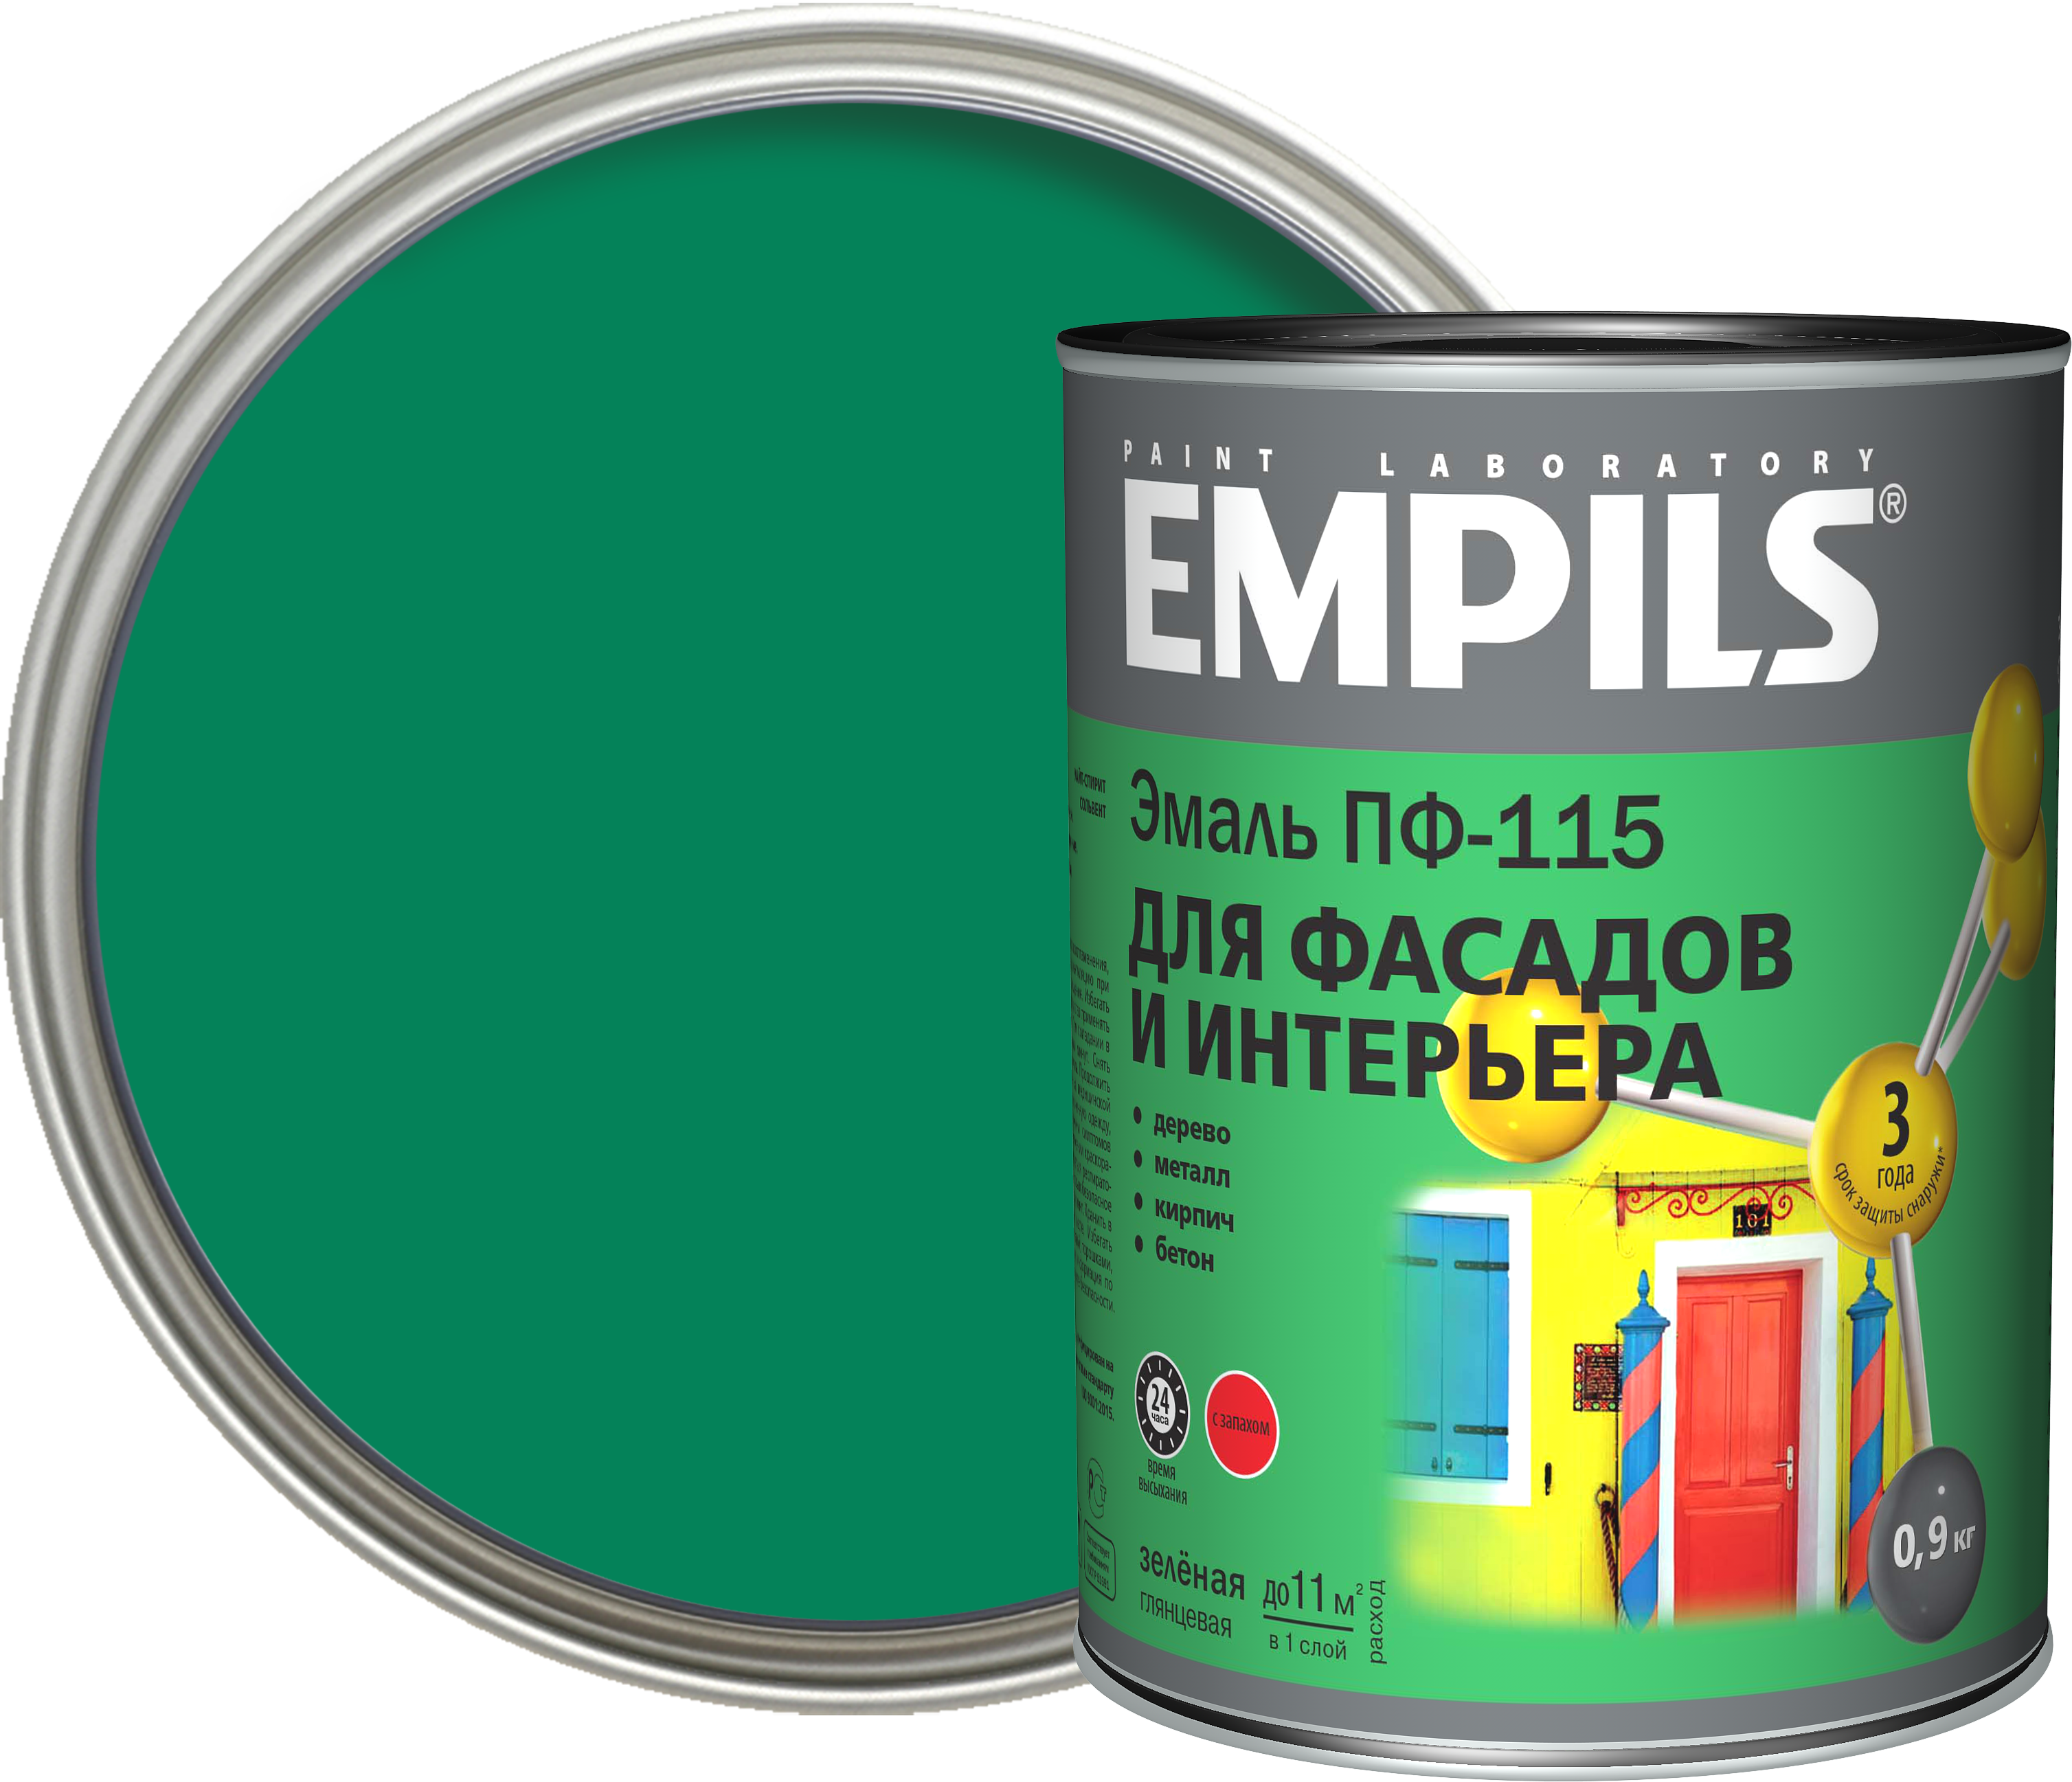 18449295 Эмаль ПФ-115 PL цвет зелёный 0.9 кг STLM-0010807 EMPILS